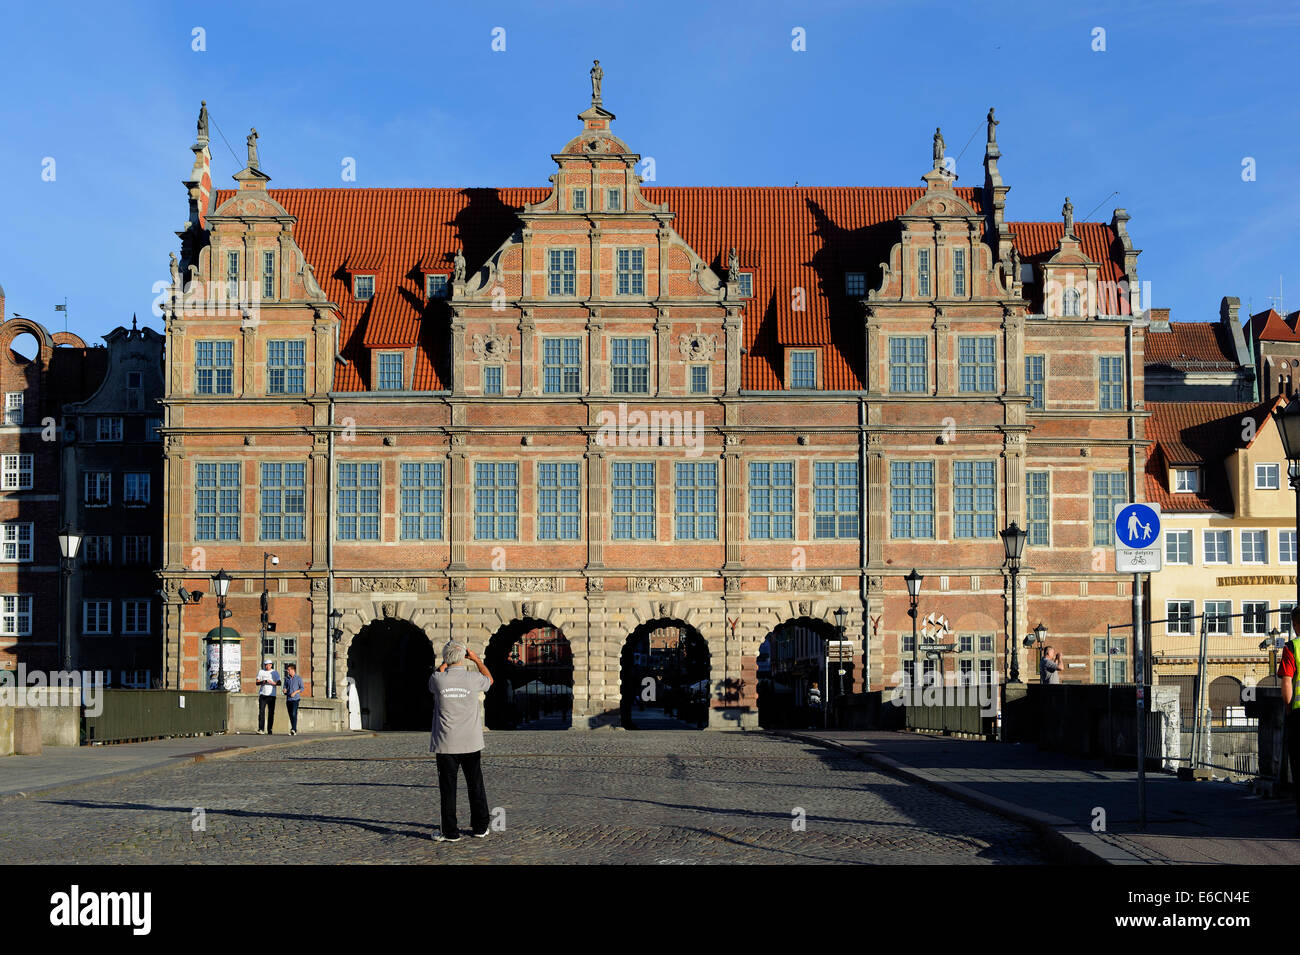 City gate Brama Zielona in Gdansk, Poland, Europe Stock Photo - Alamy